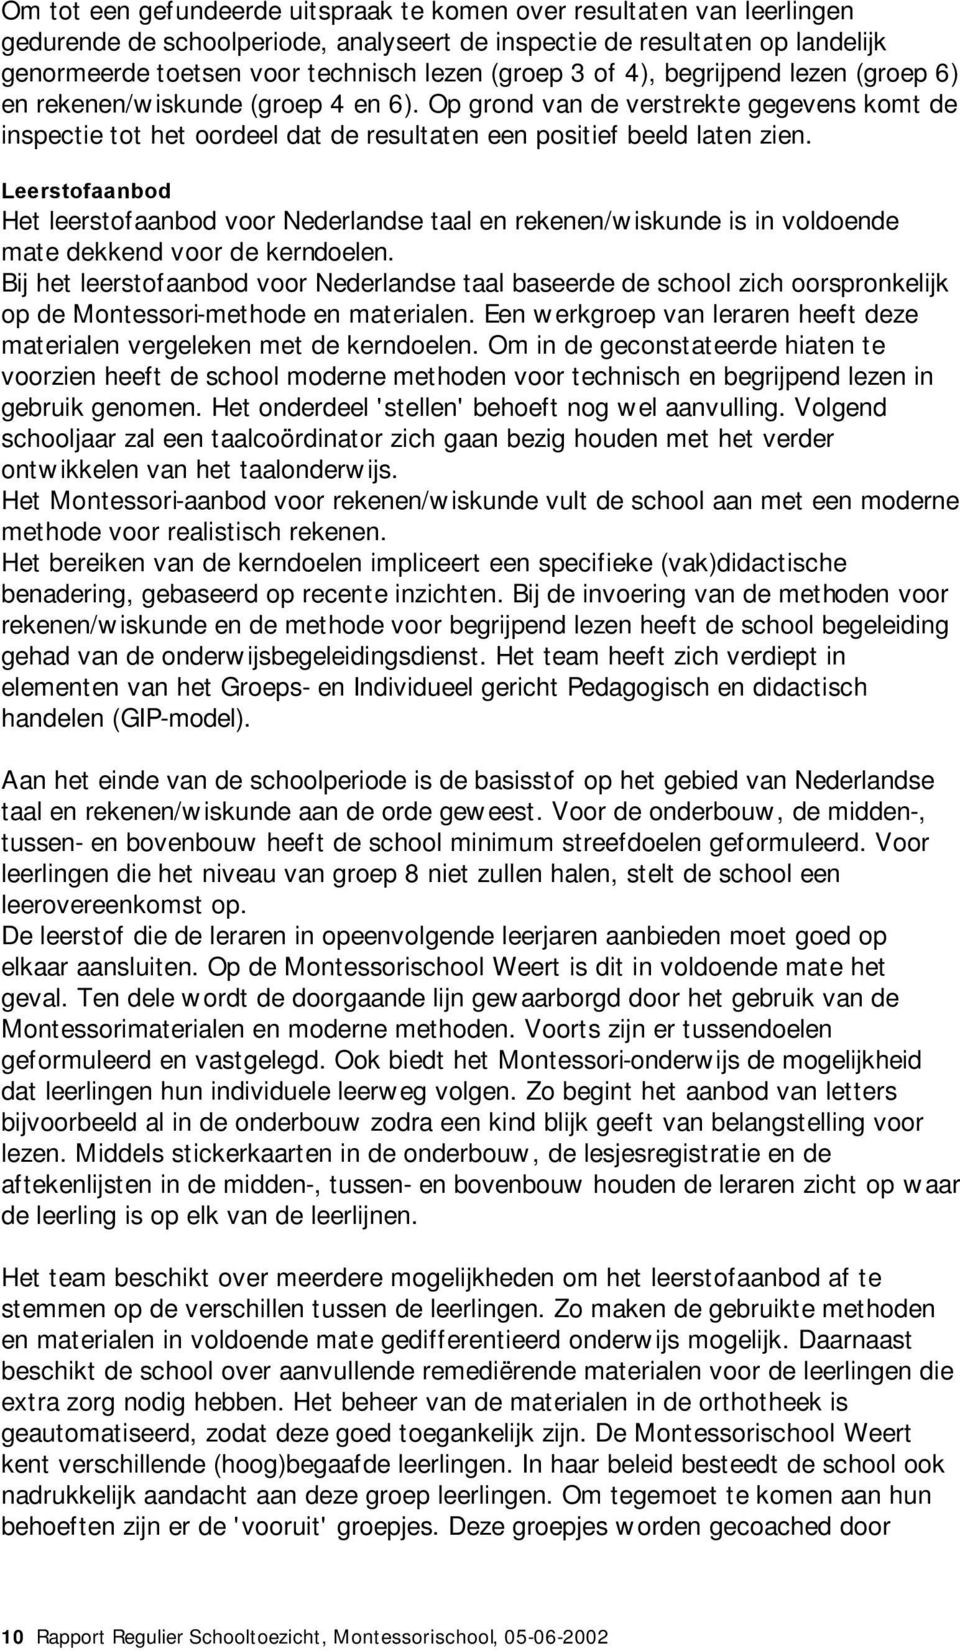 Leerstofaanbod Het leerstofaanbod voor Nederlandse taal en rekenen/wiskunde is in voldoende mate dekkend voor de kerndoelen.